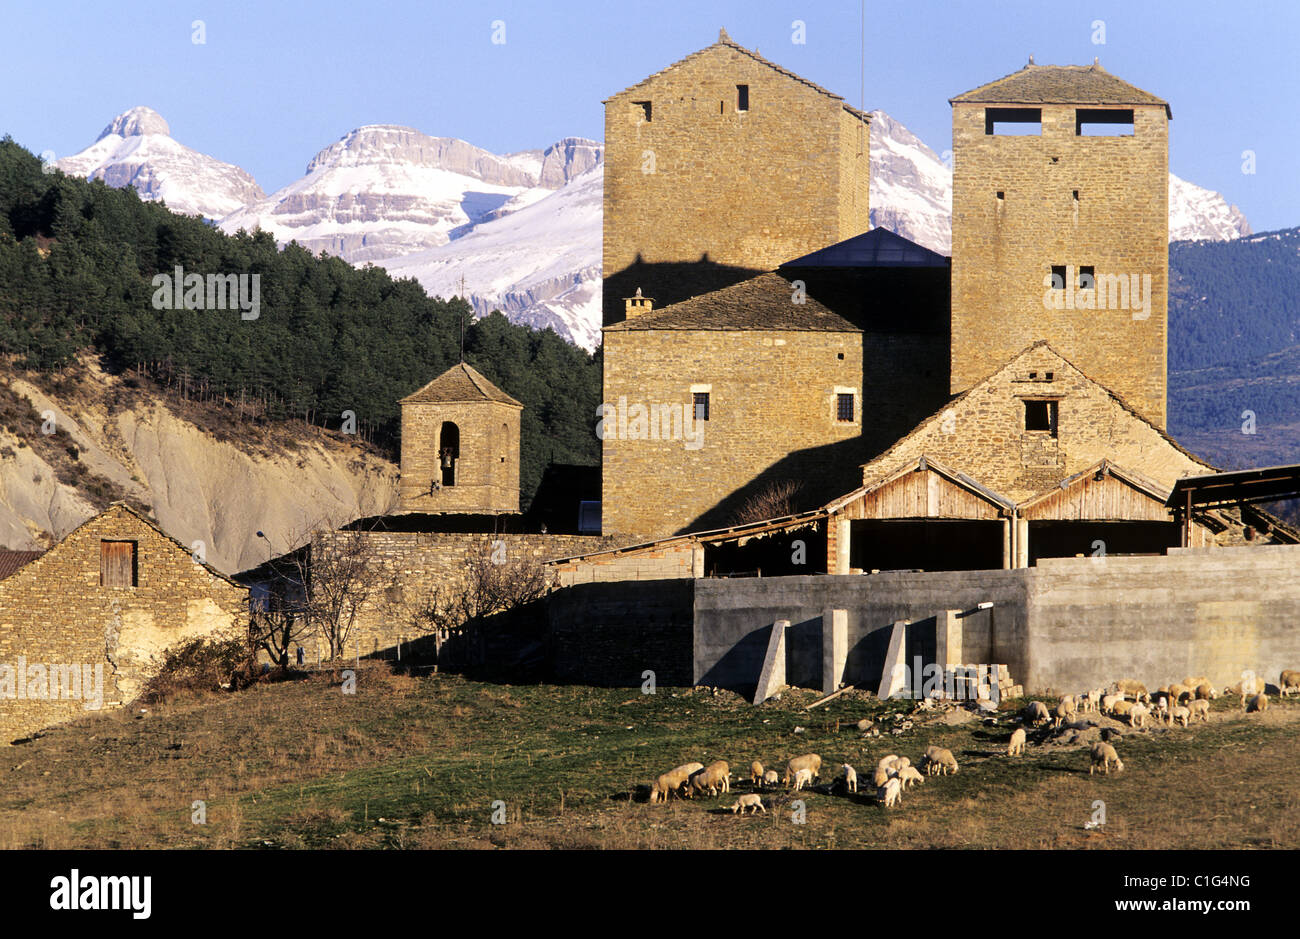 Spain, Pyrenees-Aragon, las cinco villas Stock Photo